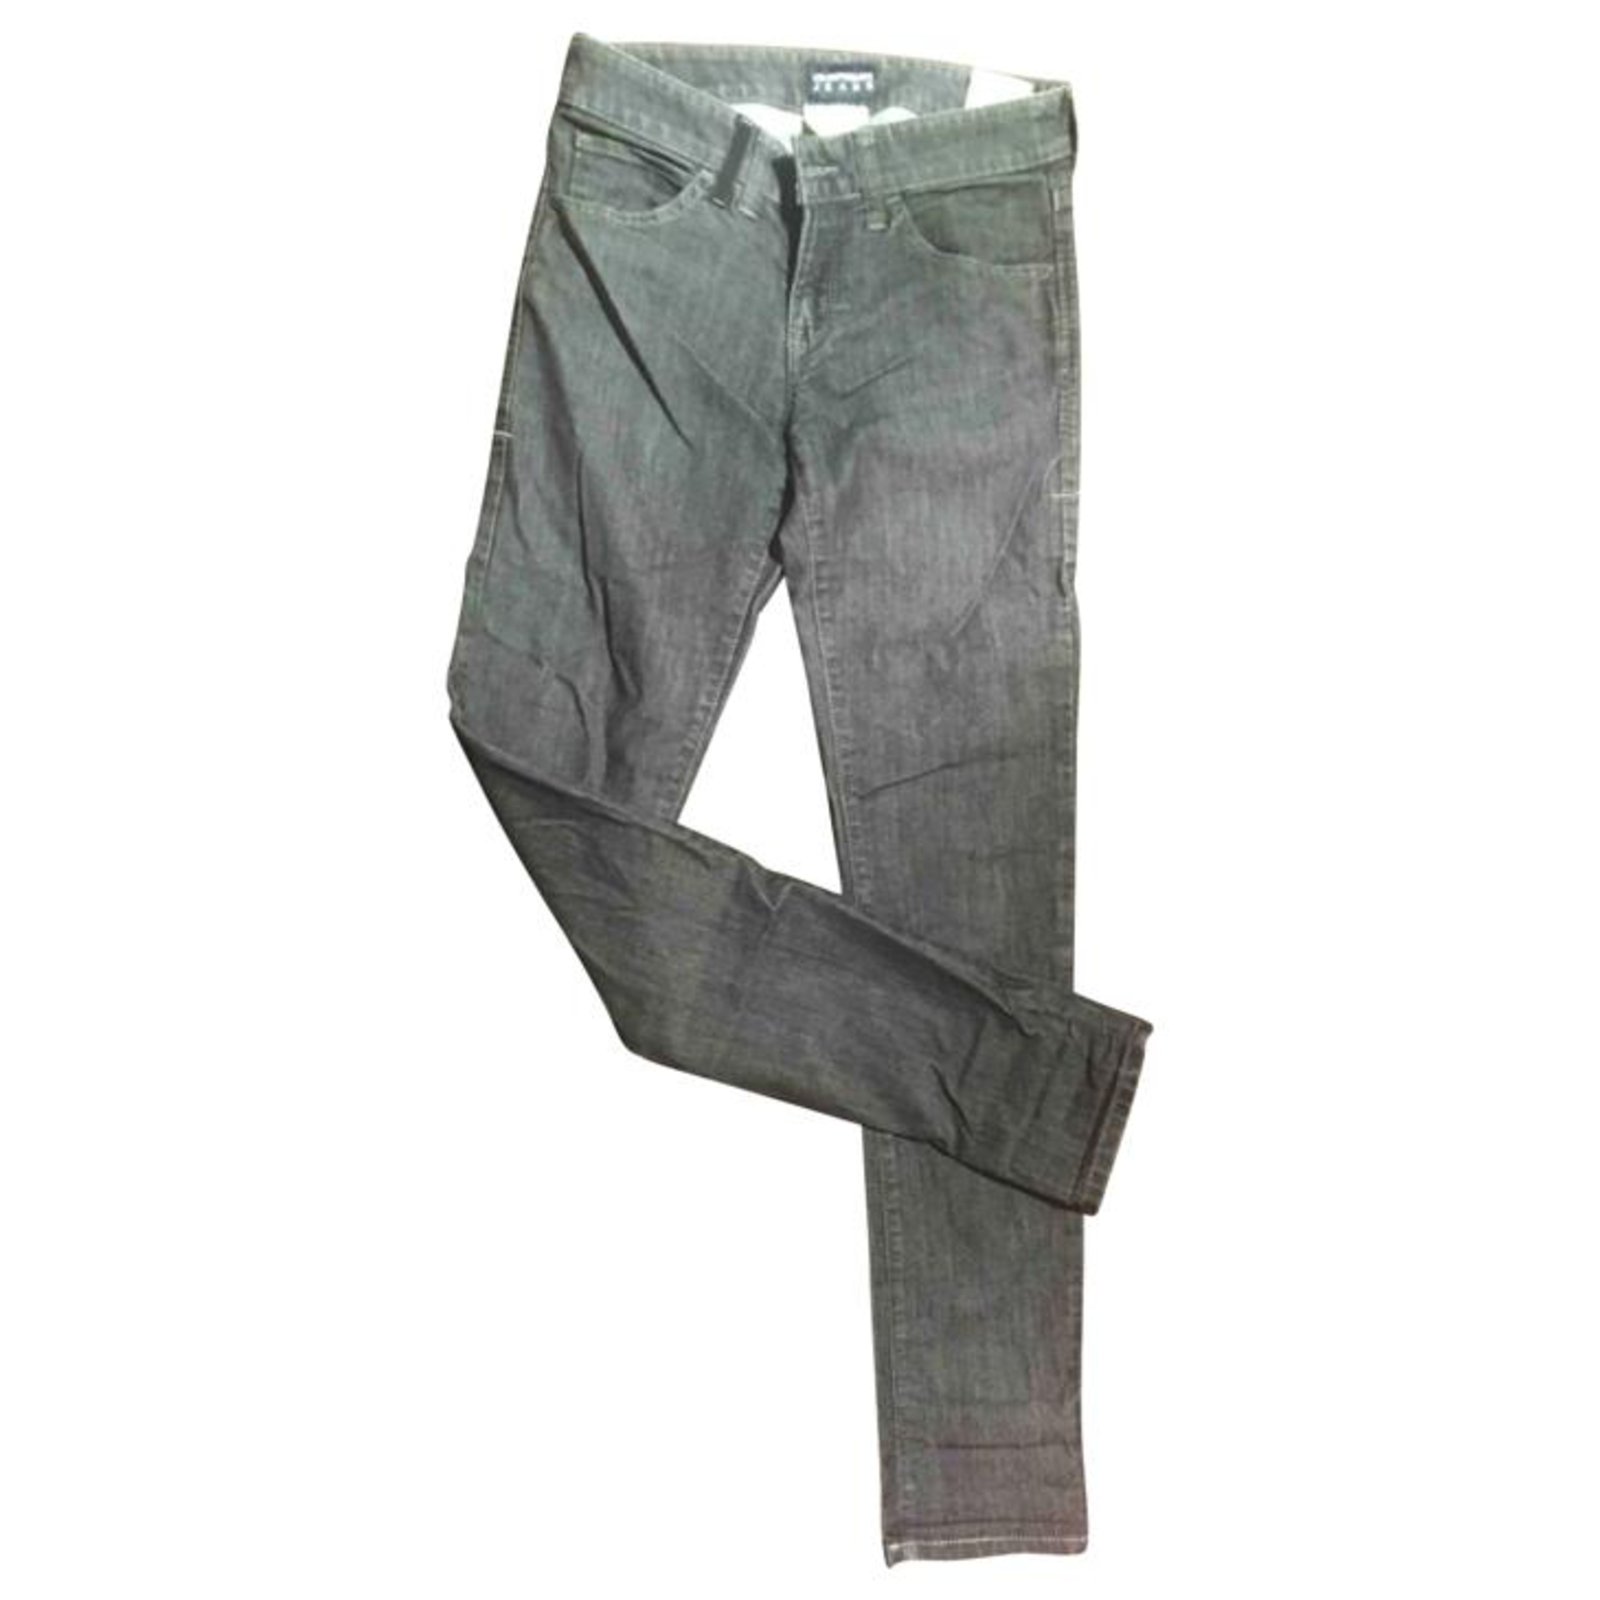 grey cotton jeans